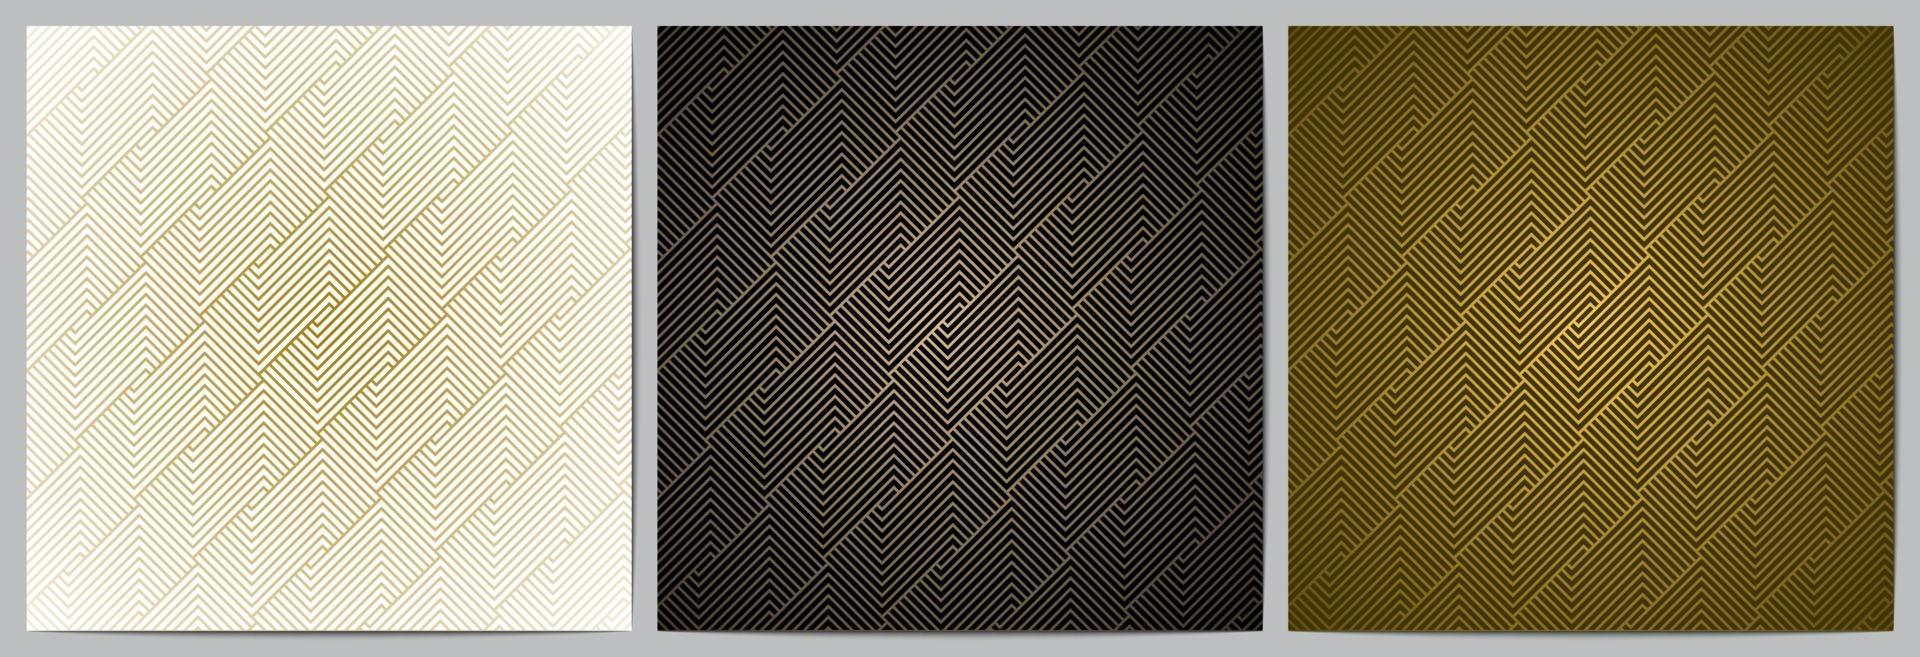 líneas doradas de lujo con fondo negro, blanco y dorado. vector